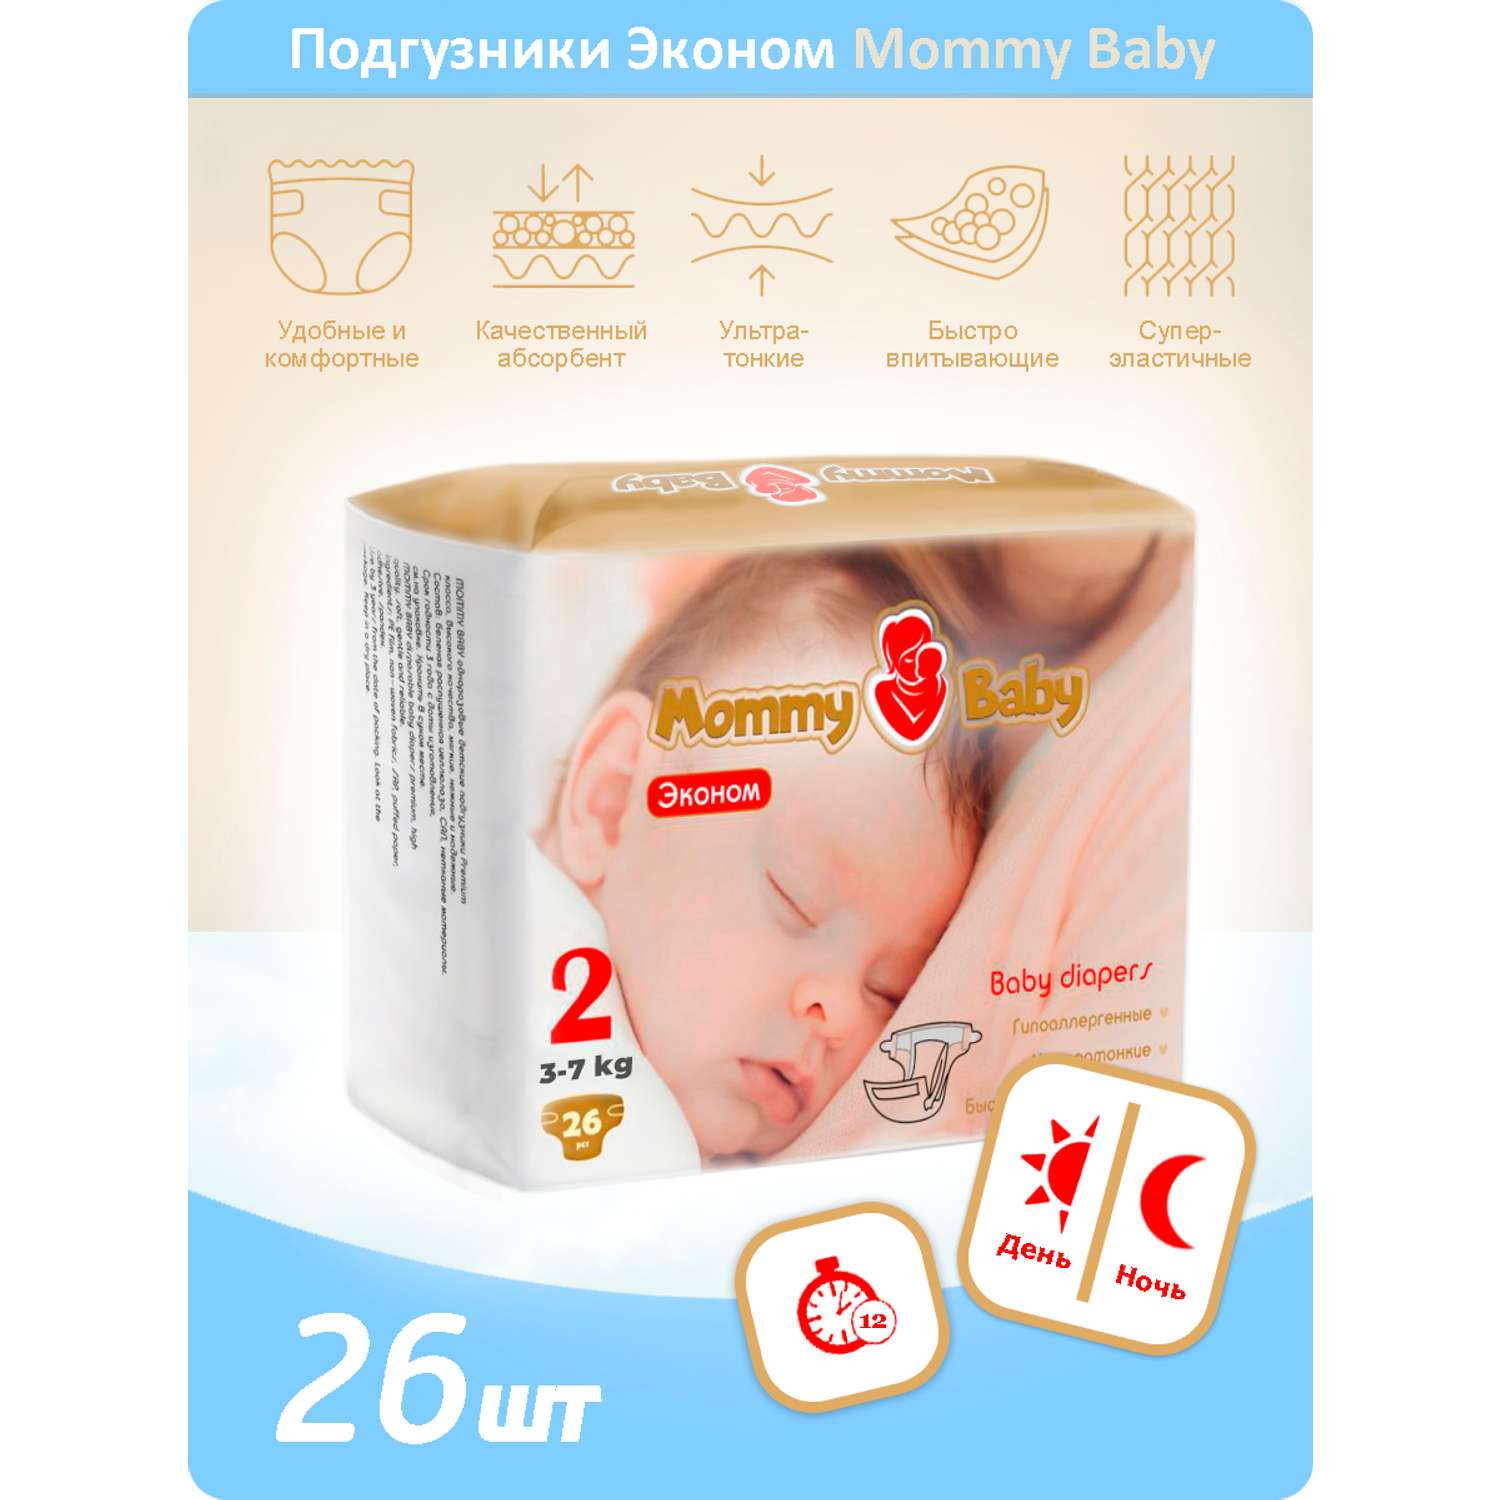 Подгузники Эконом Mommy Baby Размер 2 26 штук в упаковке 3-7 кг - фото 1